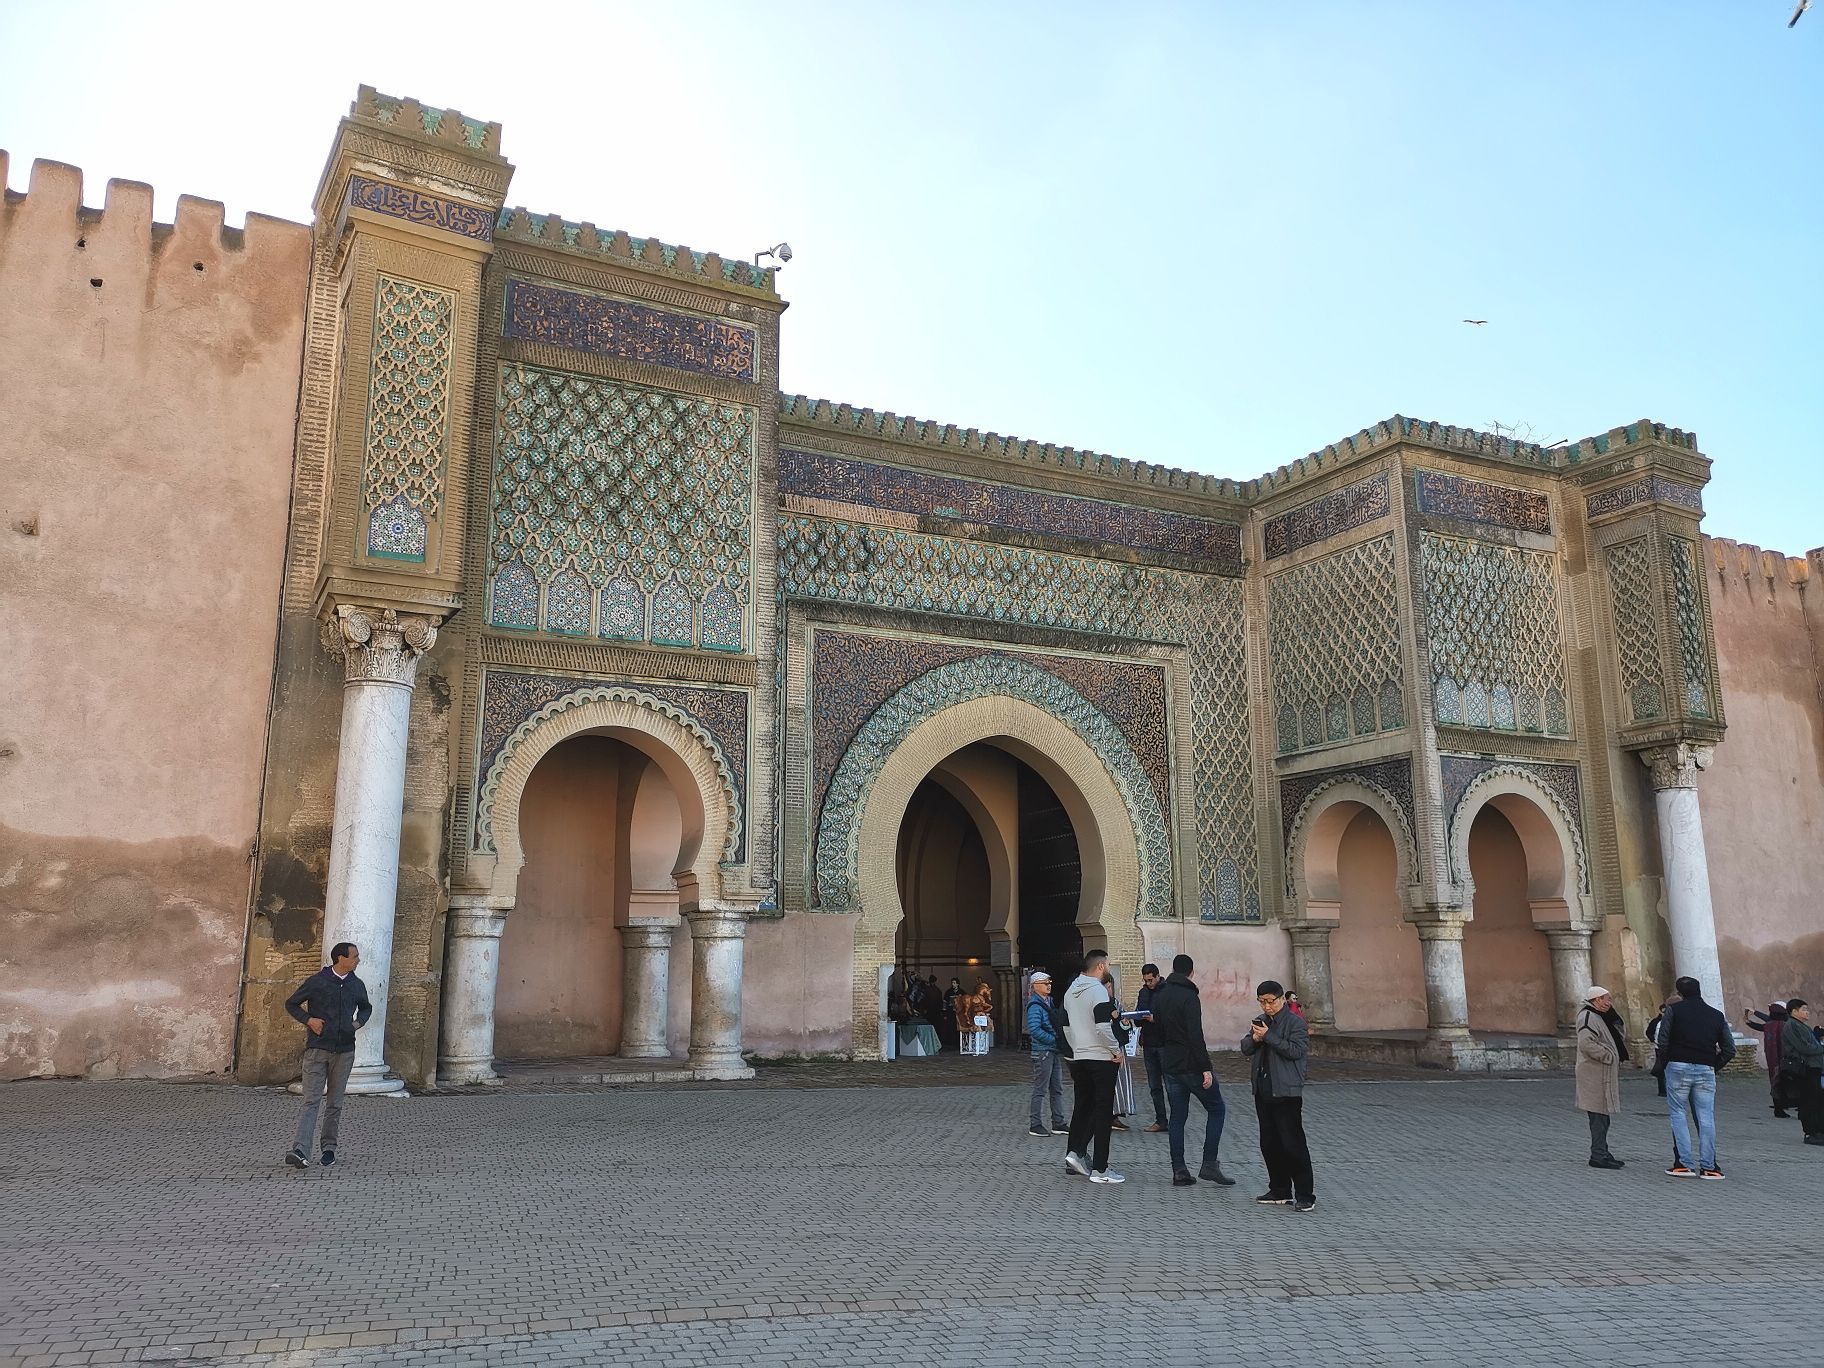 据说是摩洛哥境内最大的老城门。